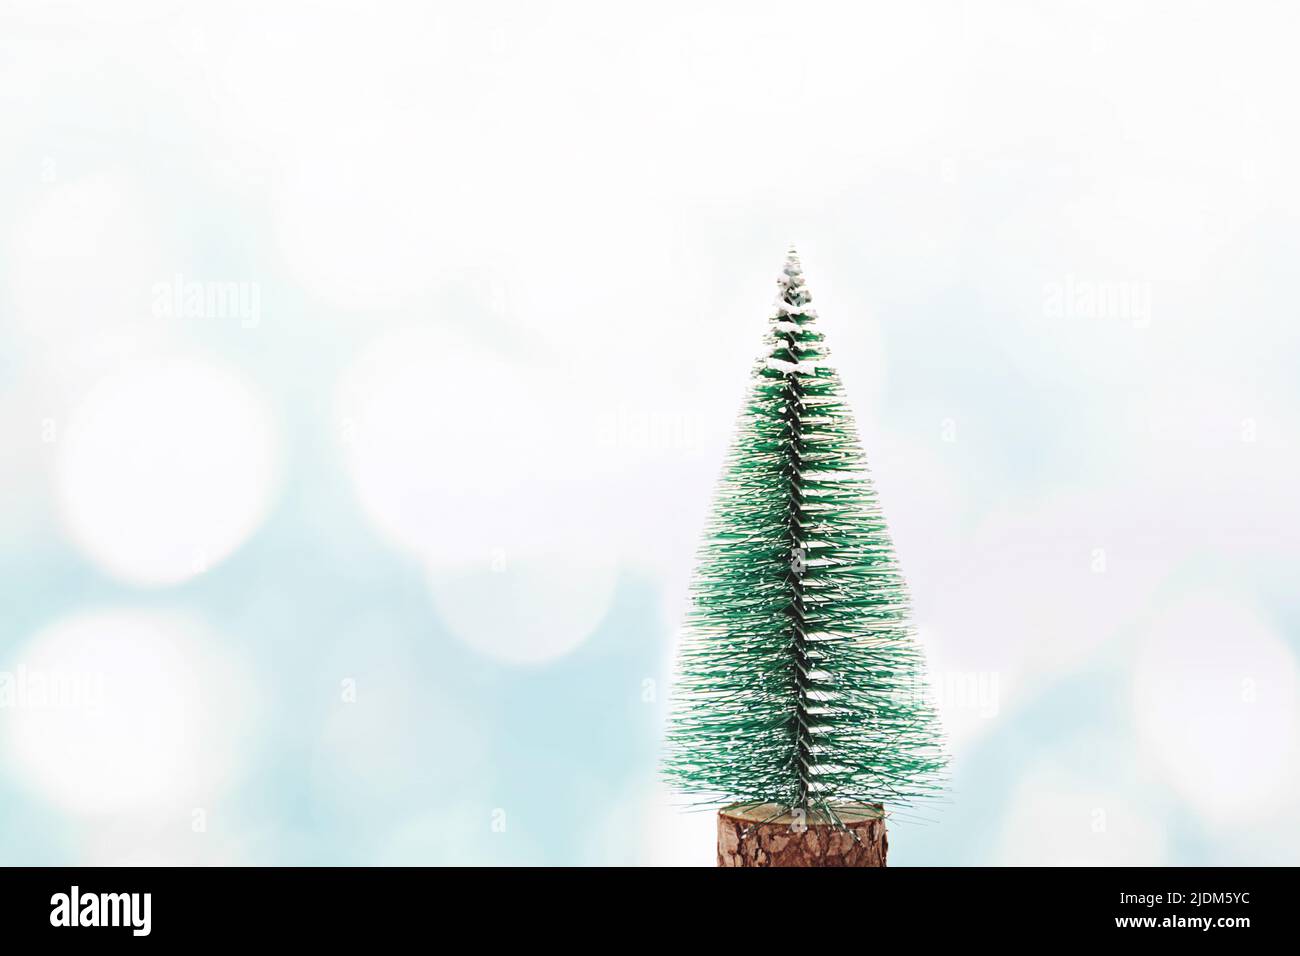 Grüner Weihnachtsbaum auf einem blauen abstrakten Winterhintergrund mit schimmernden weißen Sonnenflecken. Bokeh. Neujahrs- und Weihnachtskonzept. Platz für Text kopieren. Stockfoto